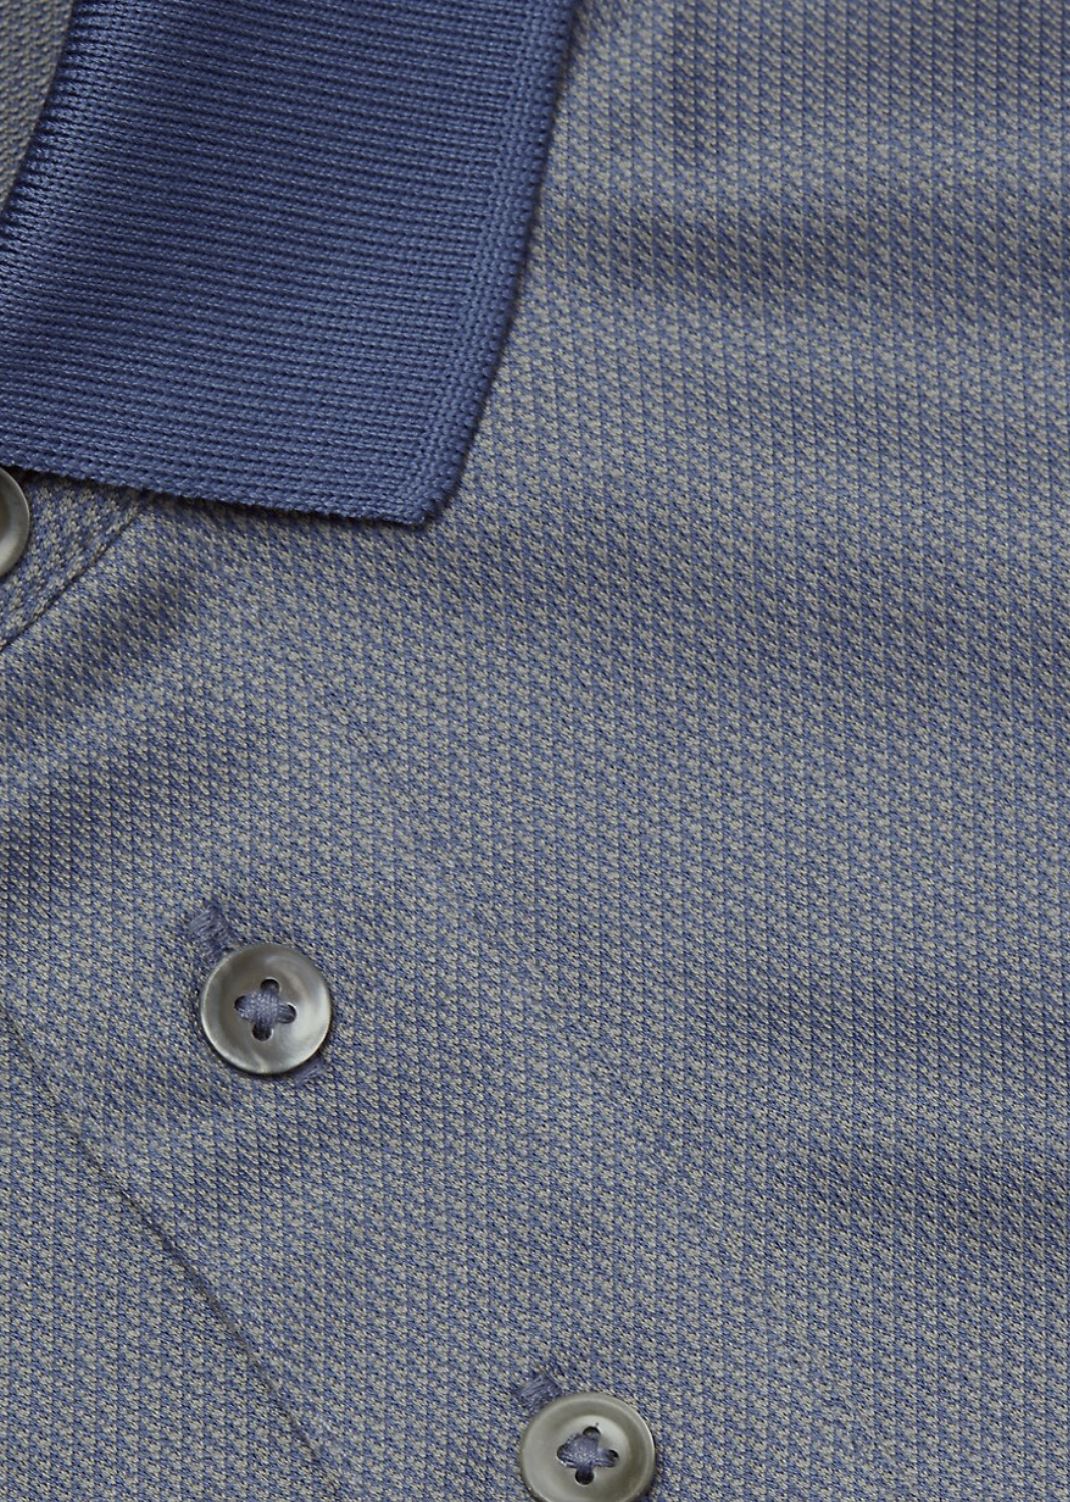 NWT 195 долларов США Emporio Armani Жаккардовая рубашка-поло с микропринтом Сине-Серая XL 